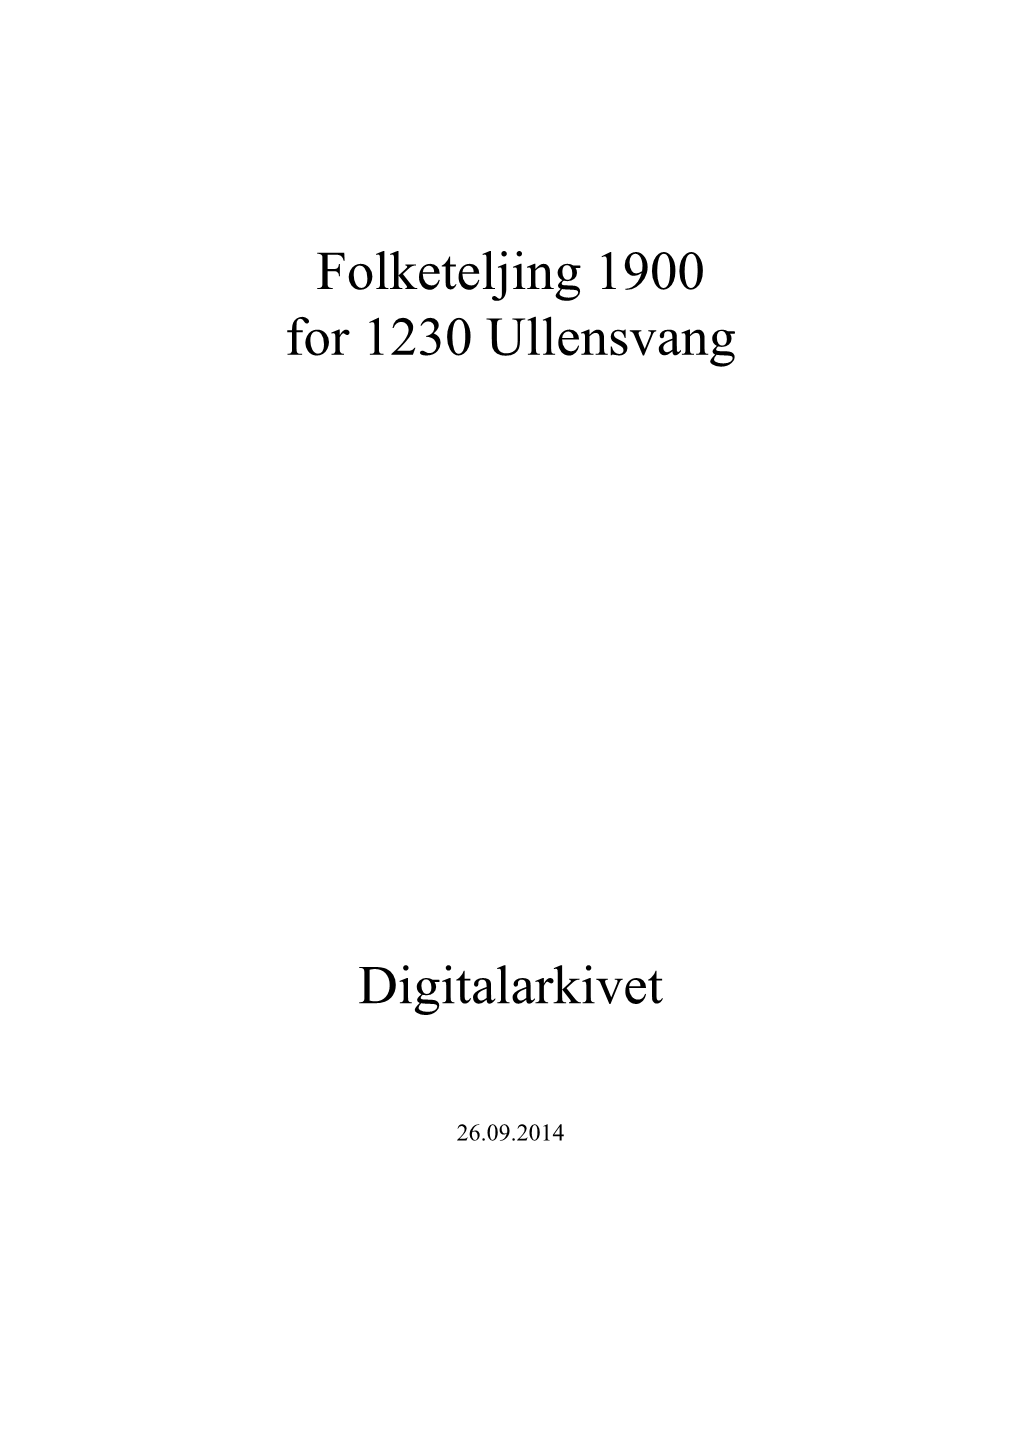 Folketeljing 1900 for 1230 Ullensvang Digitalarkivet